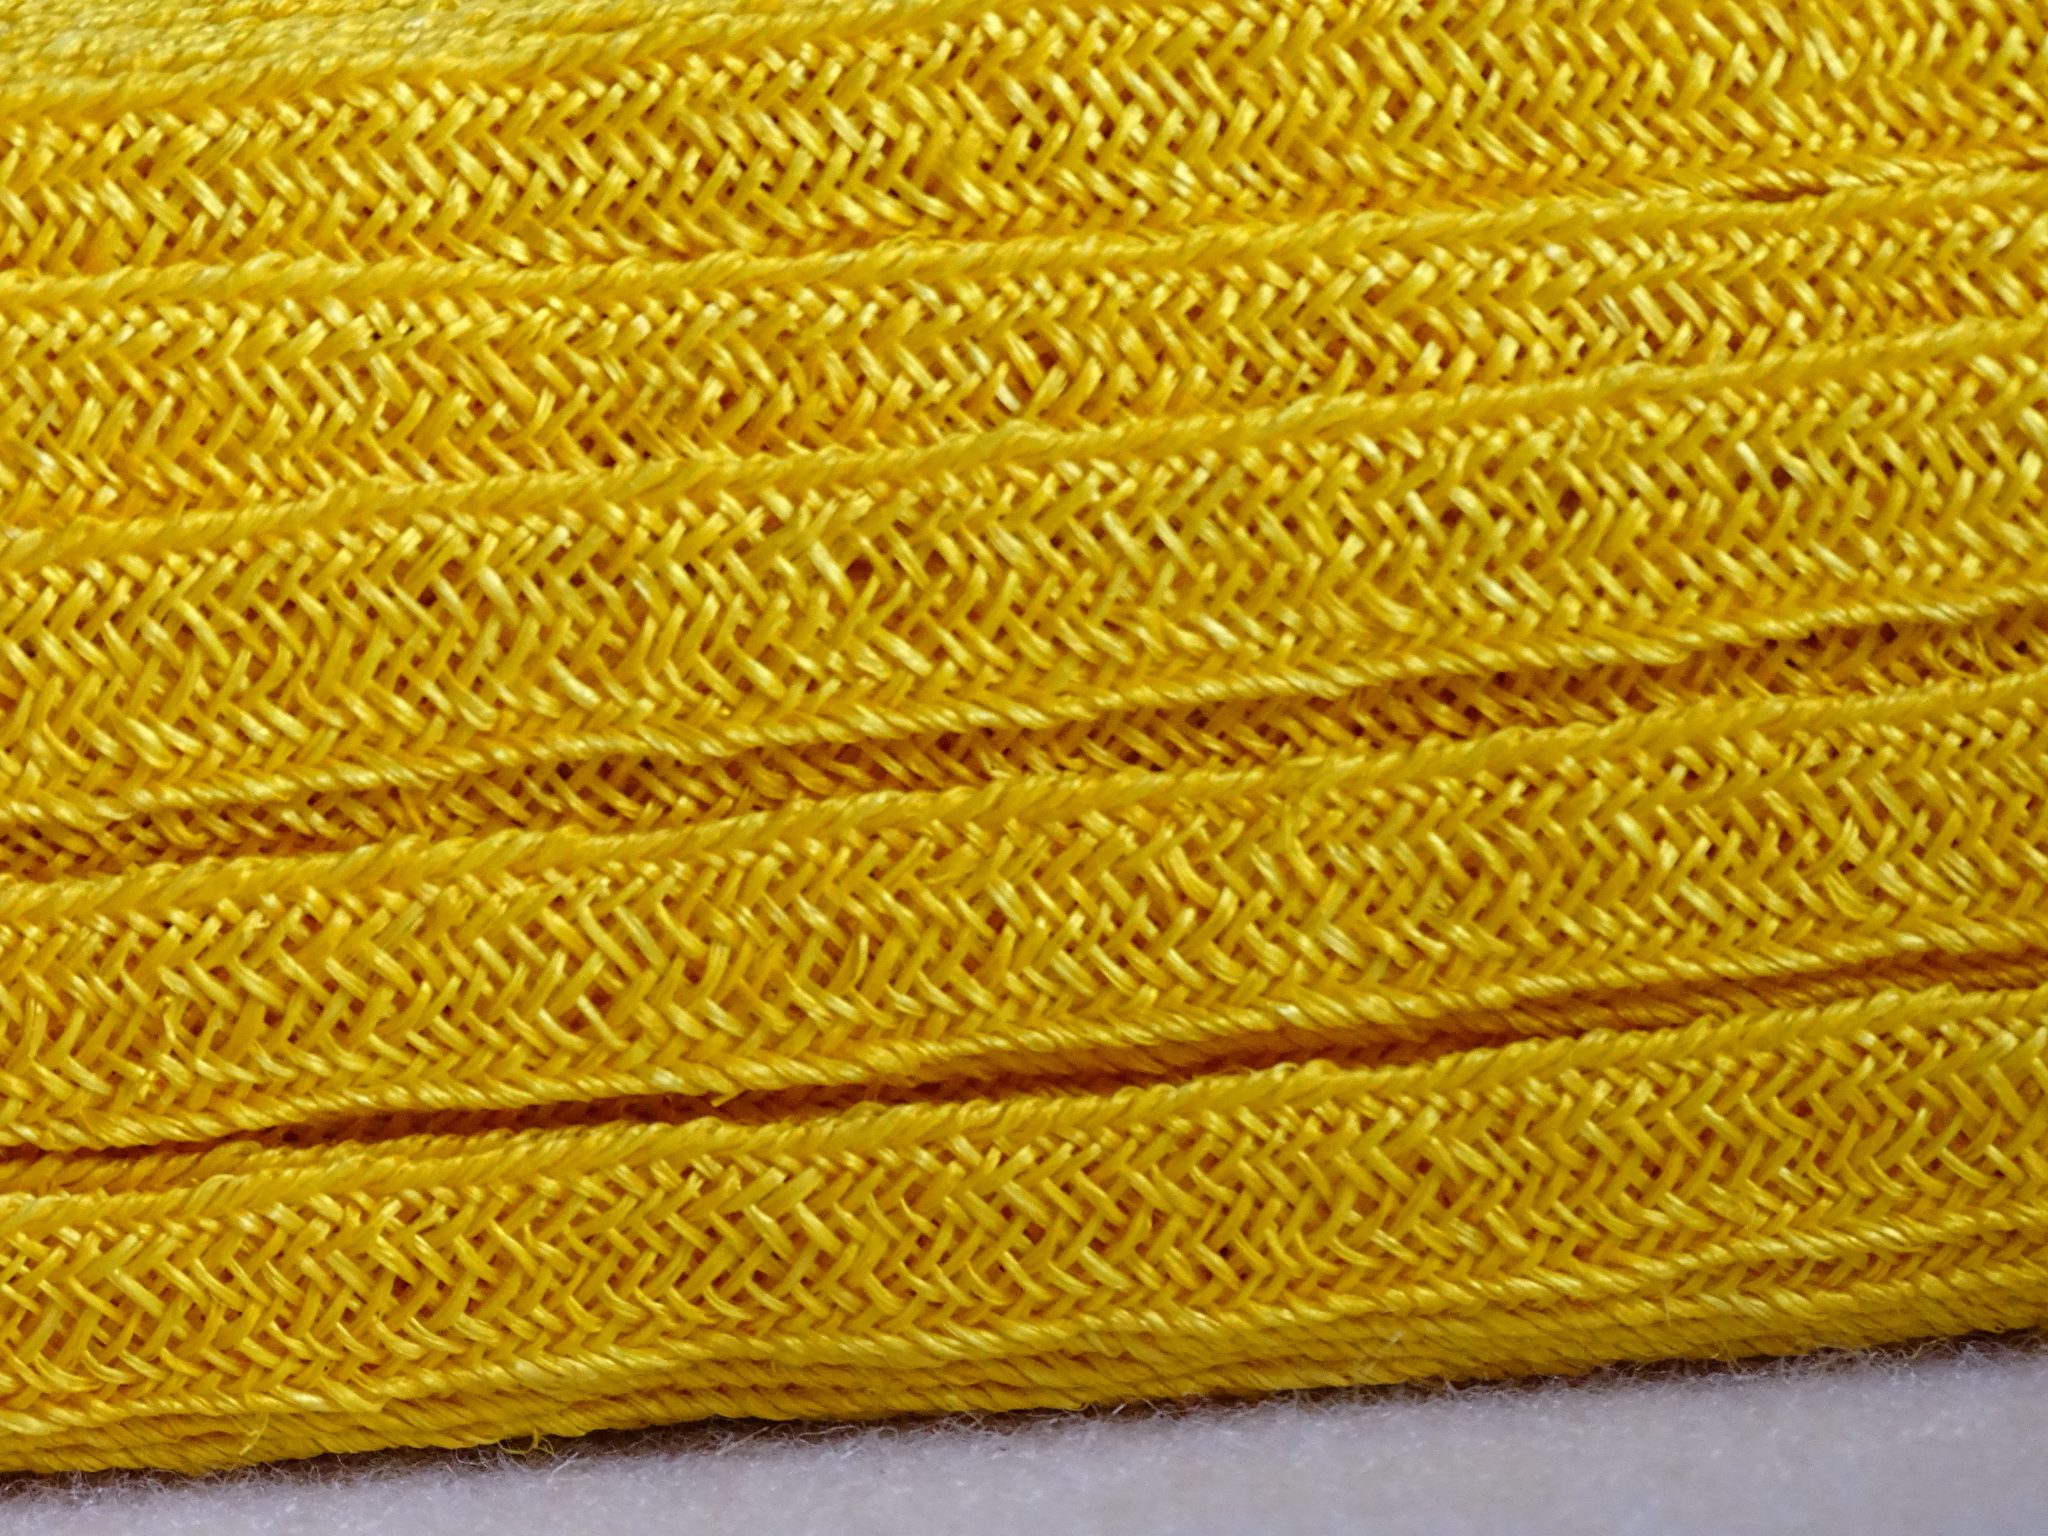 Sisalbandstro (strawbraid) geel voor een hoed, fascinator, tas of afwerking